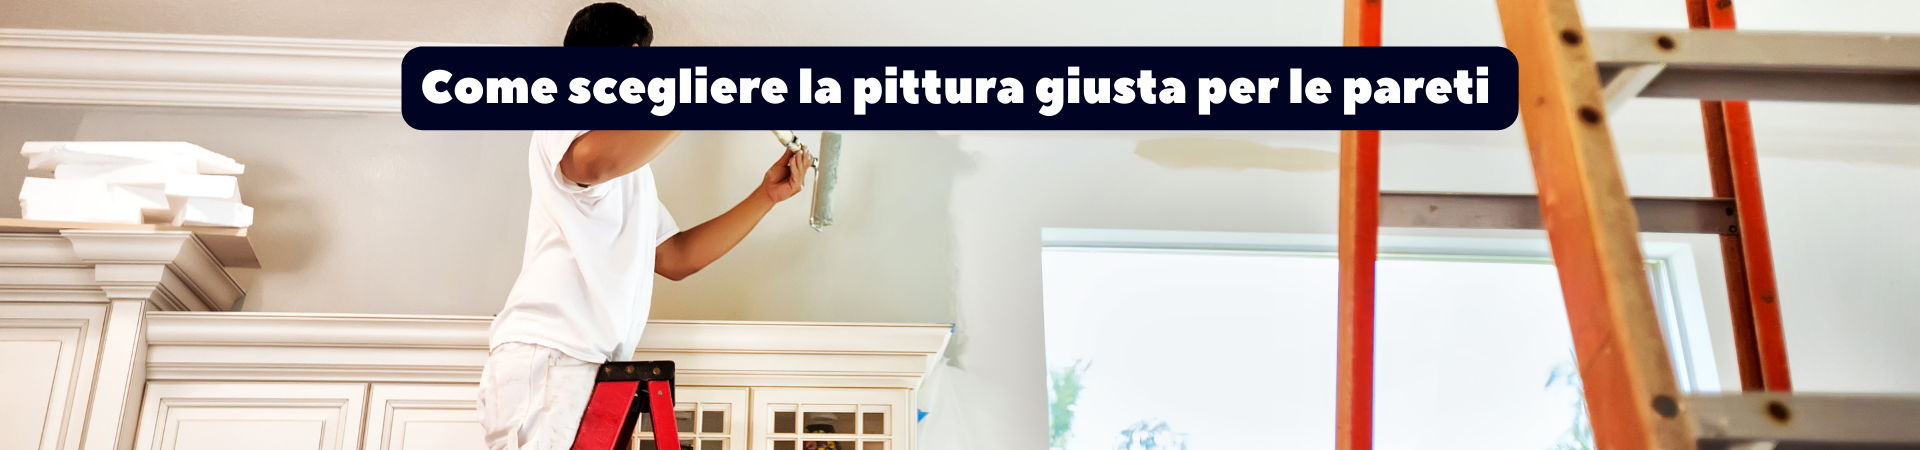 Come scegliere la pittura giusta per le pareti di casa?